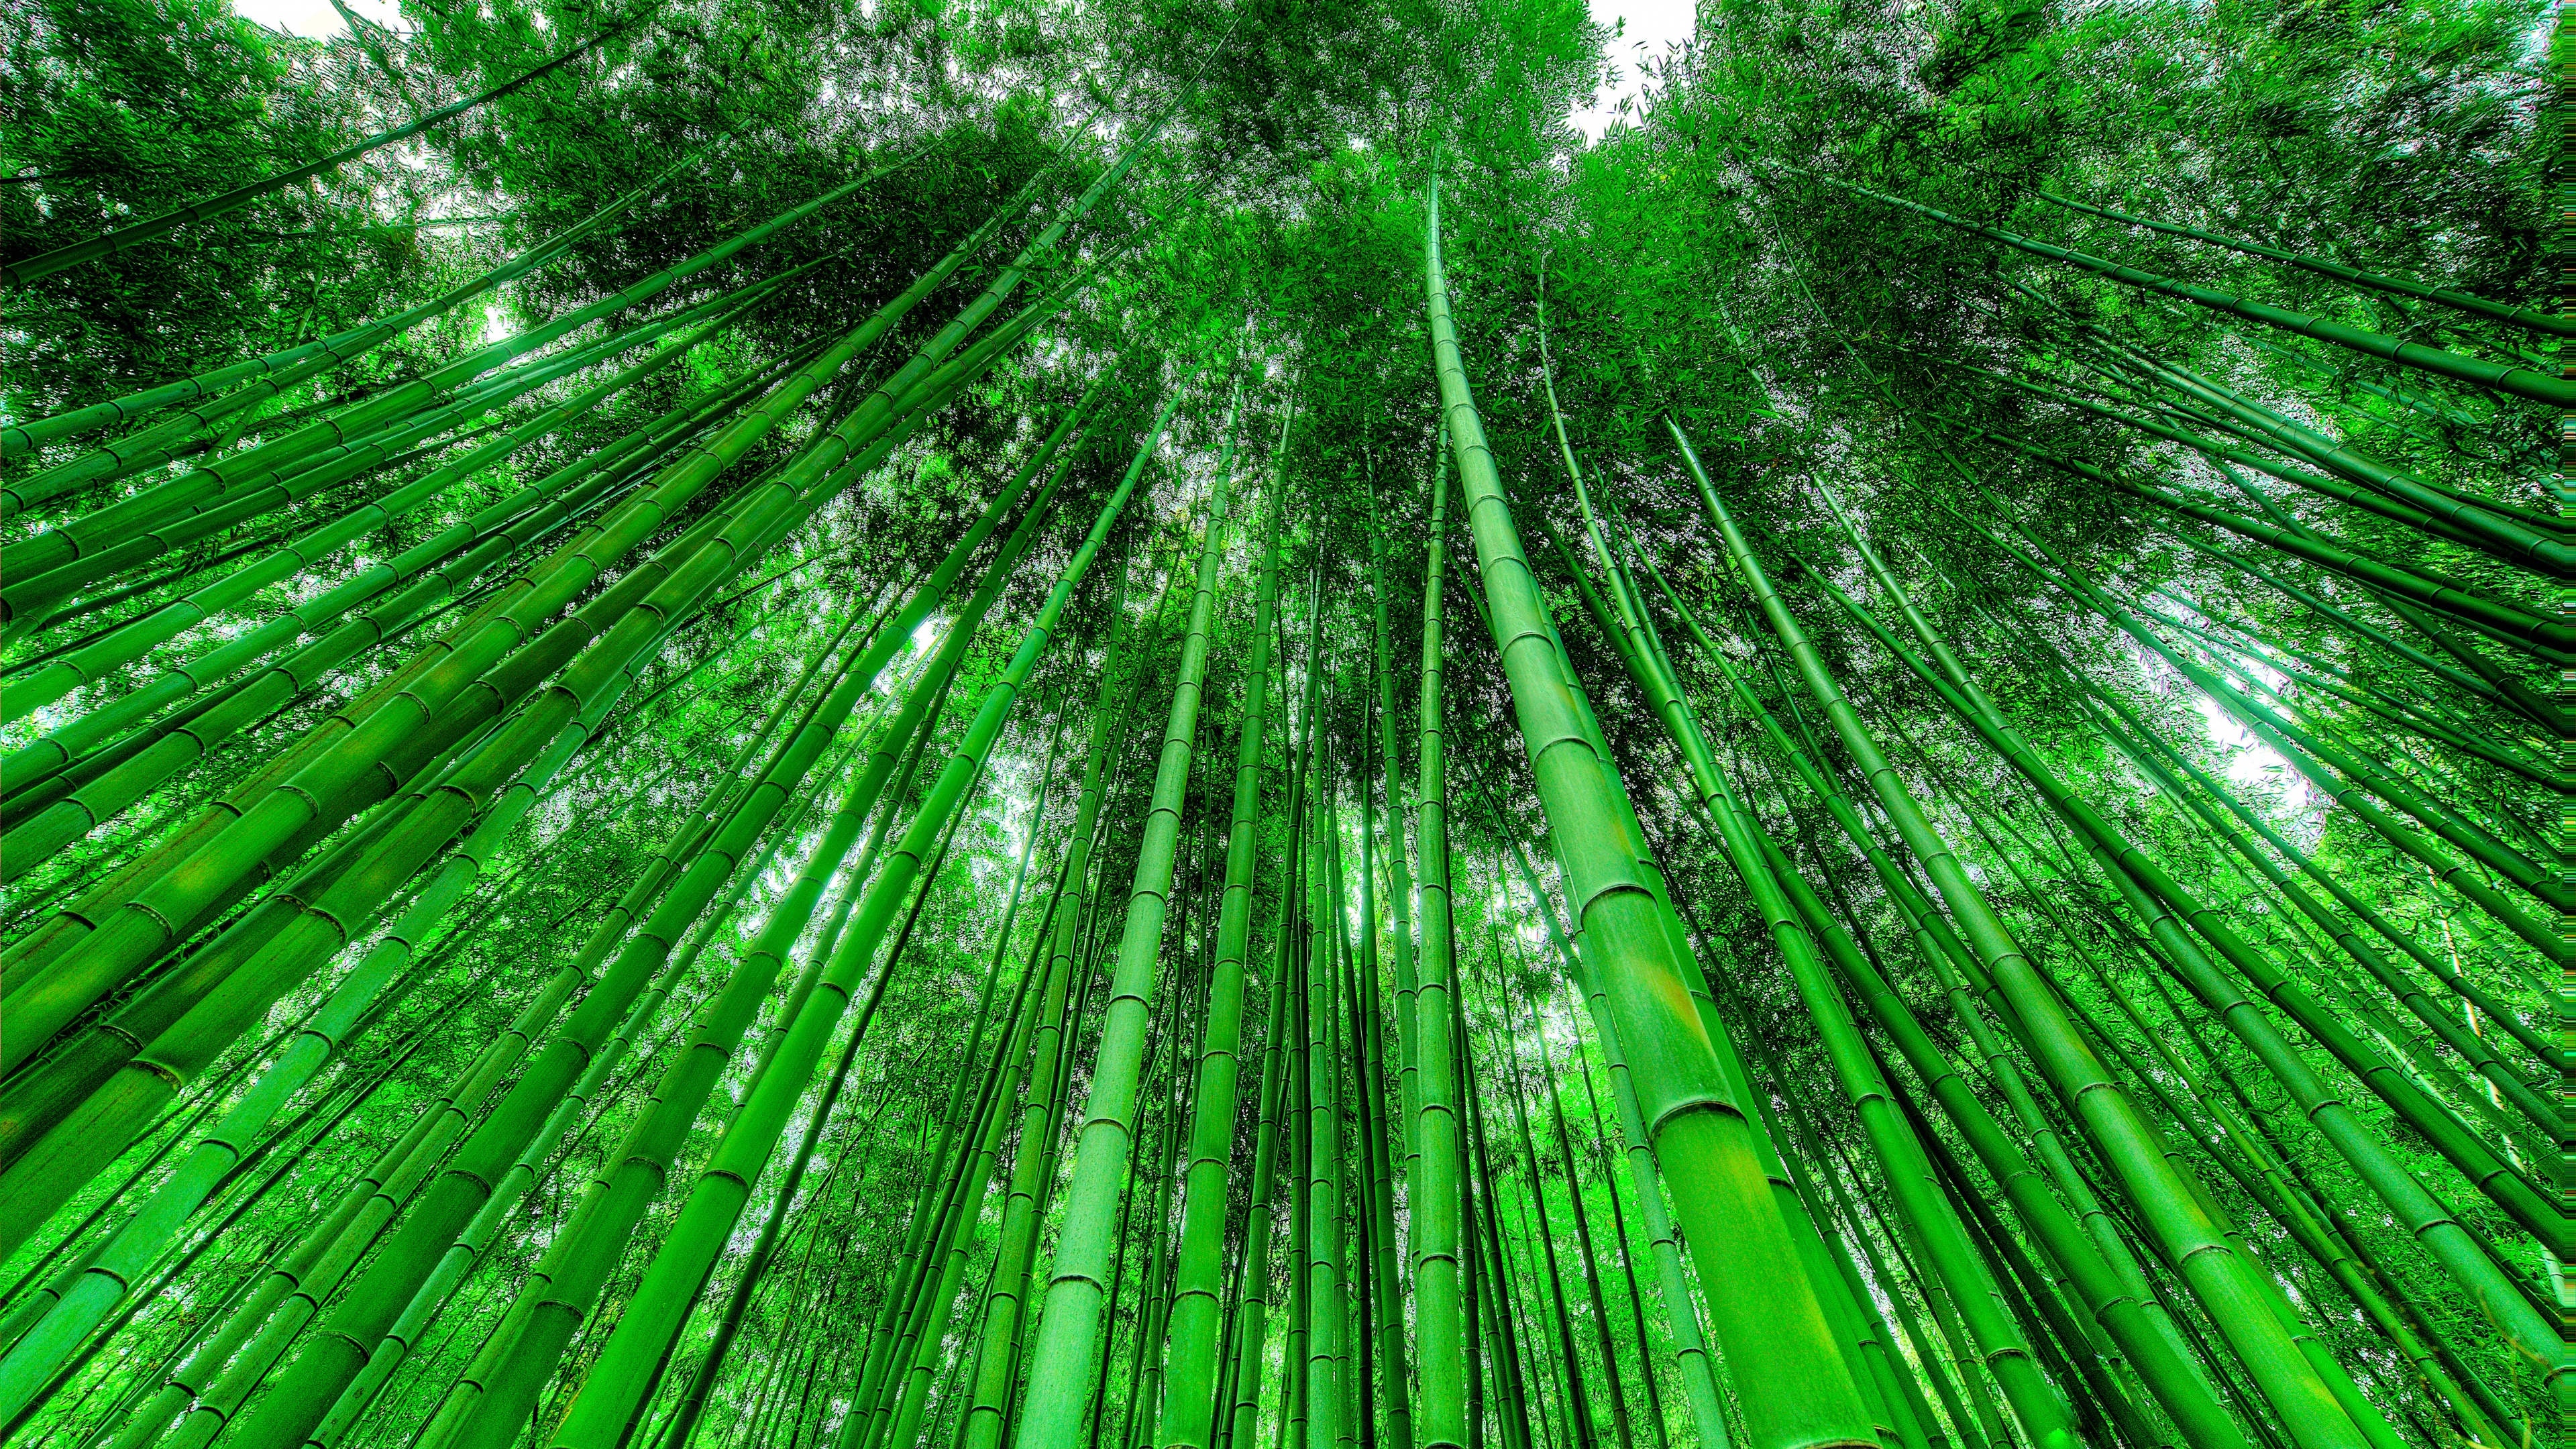 Bambu đang được sử dụng để tạo ra những cây đàn piano và vật dụng nội thất sang trọng. Hãy thưởng thức hình ảnh của một bãi rừng tre tuyệt đẹp để tận hưởng sức hút đầy bất ngờ của chúng.